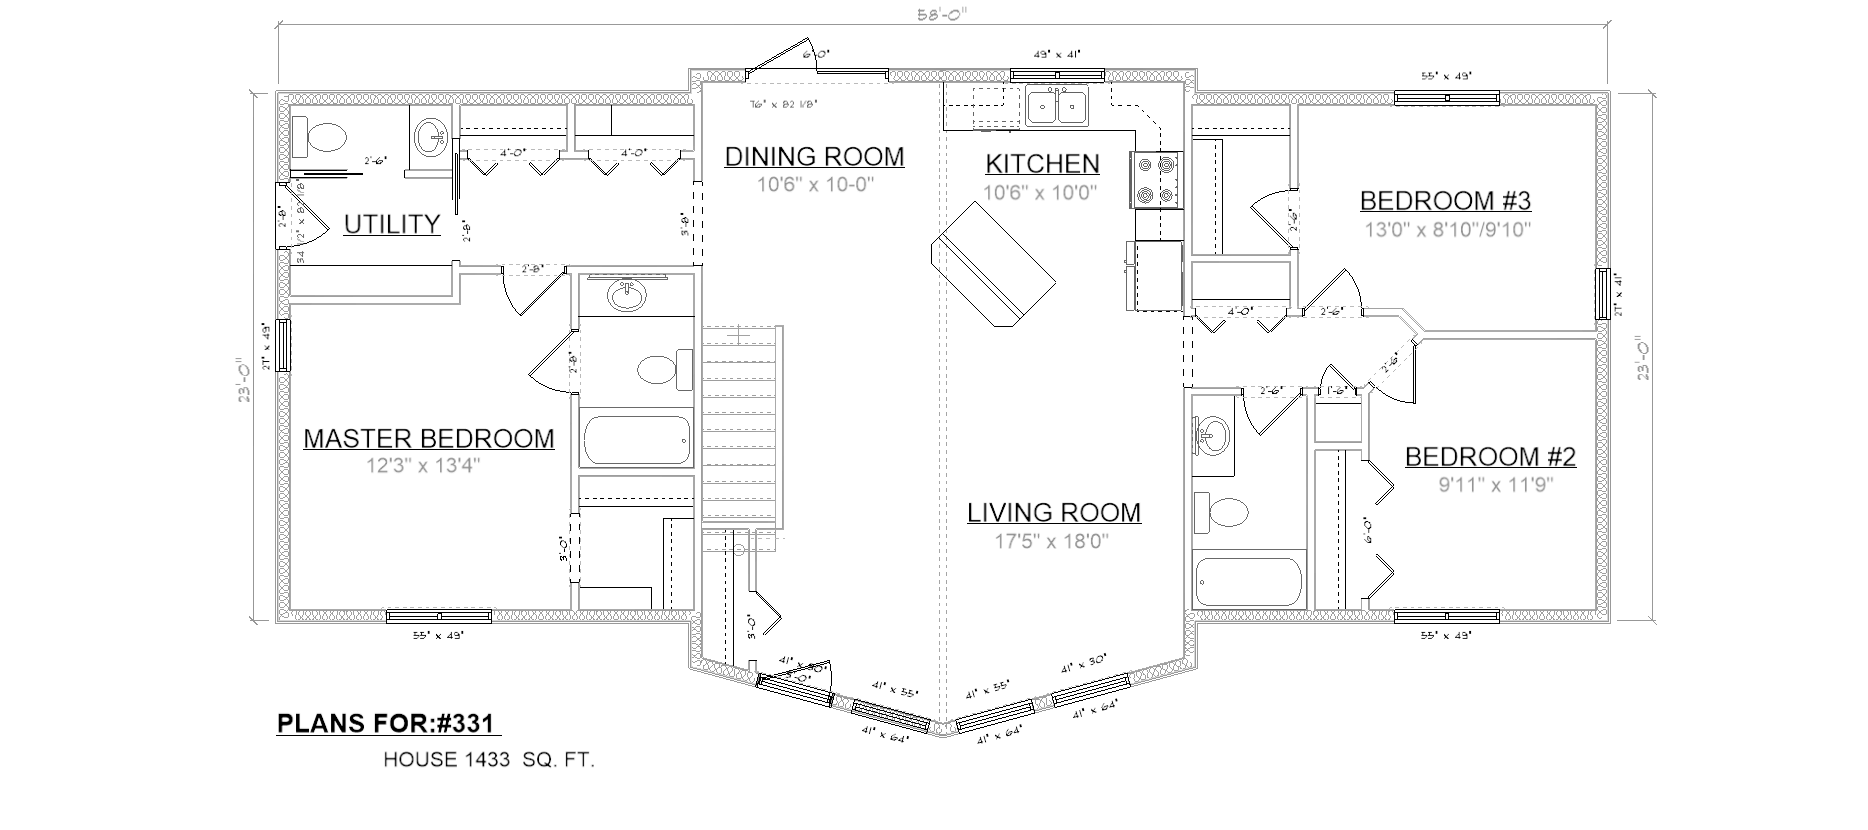 Penner Homes Floor Plan Id: 331